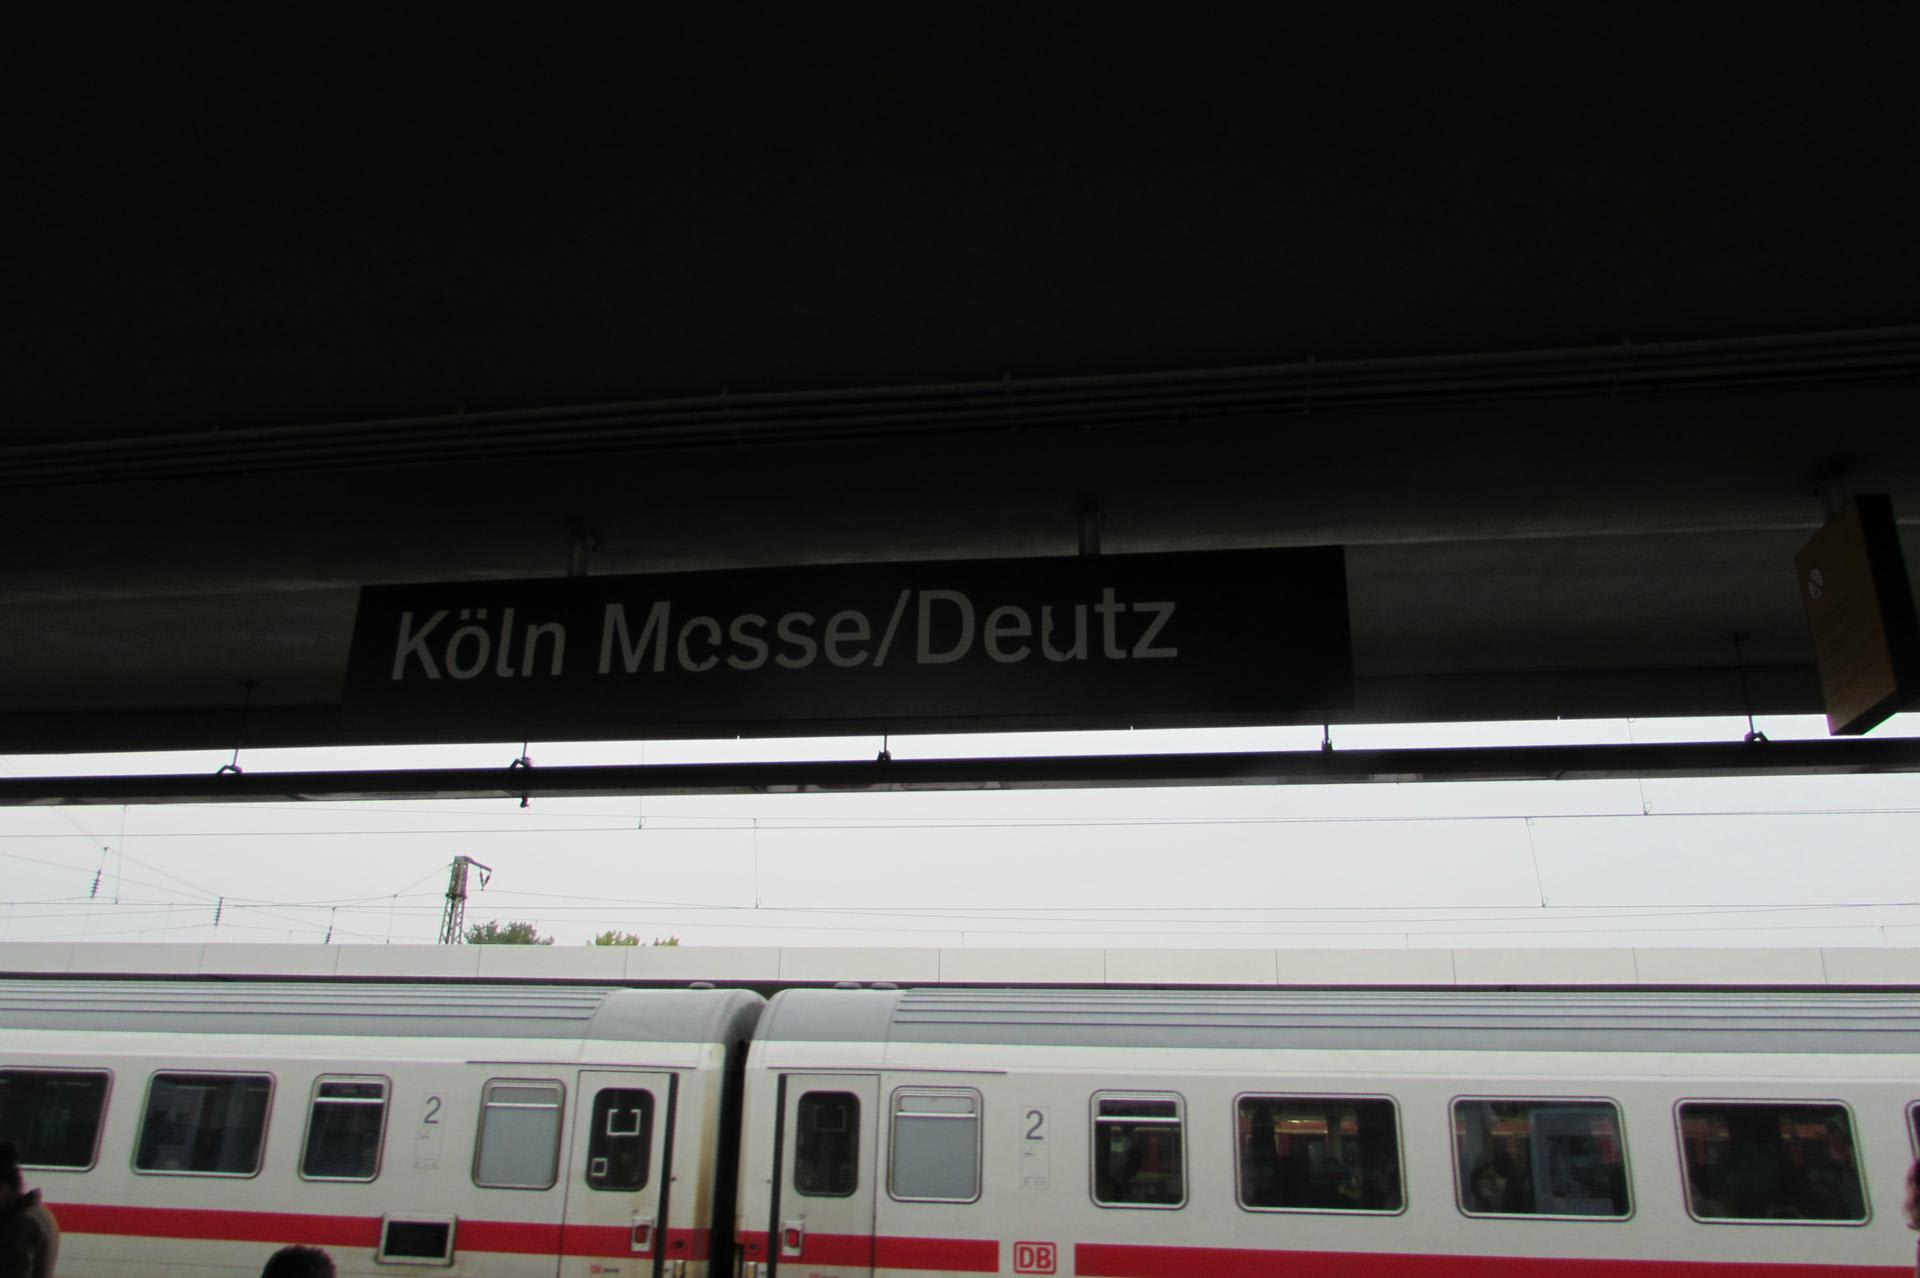 ケルン・メッセ/ドイツ駅